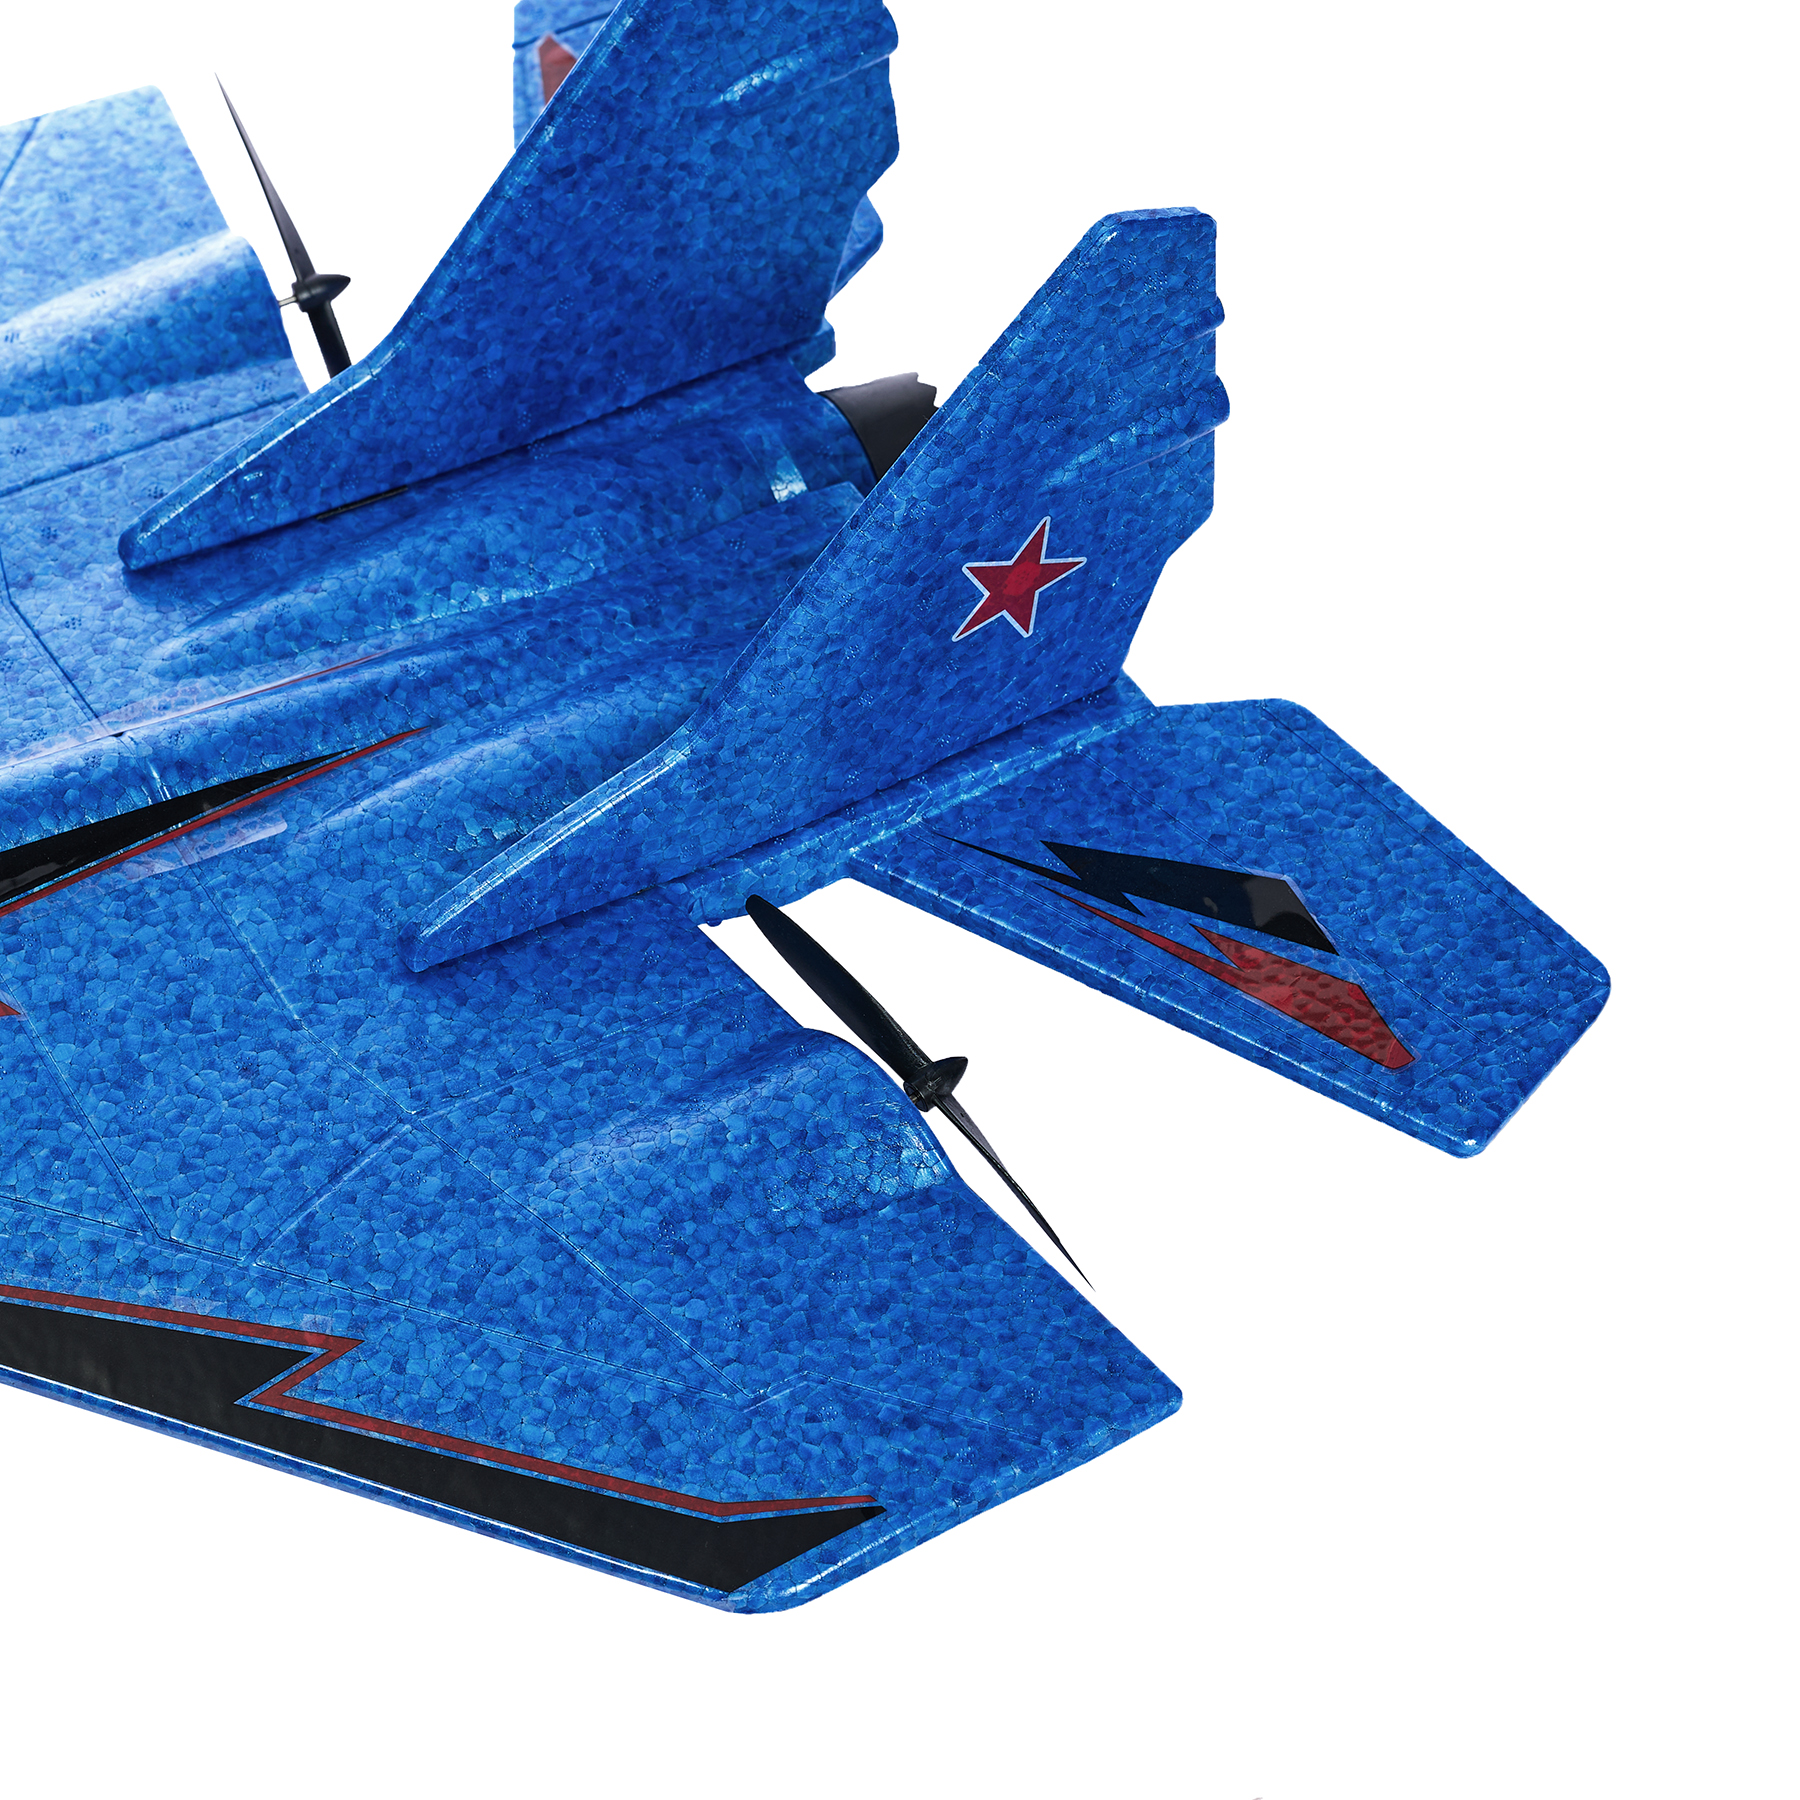 Самолёт радиоуправляемый истребитель Миг-29 "Полет в небе", синий, 60х11х44см - #3